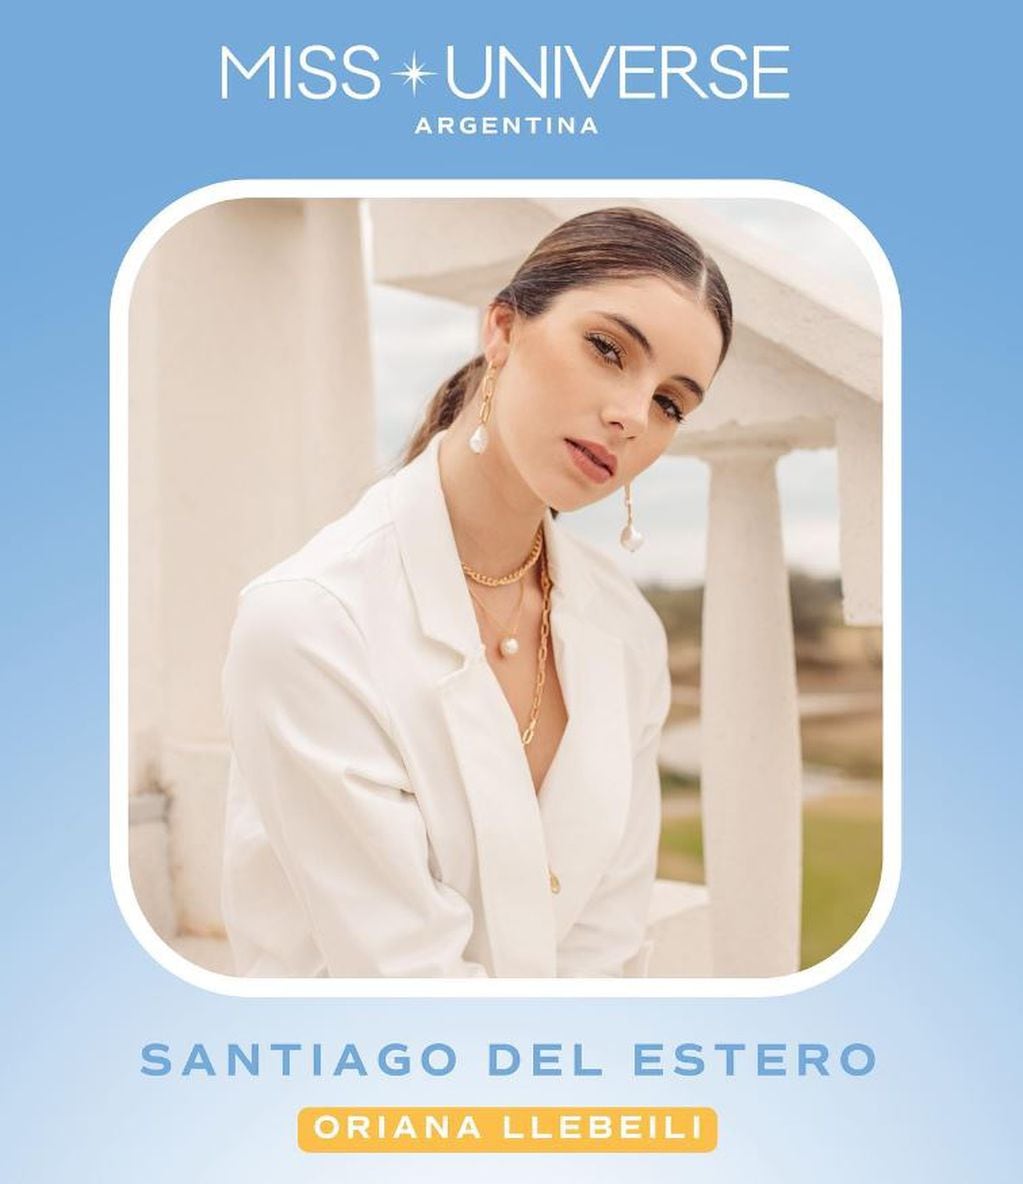 Miss Santiago del Estero, Oriana Llebeile